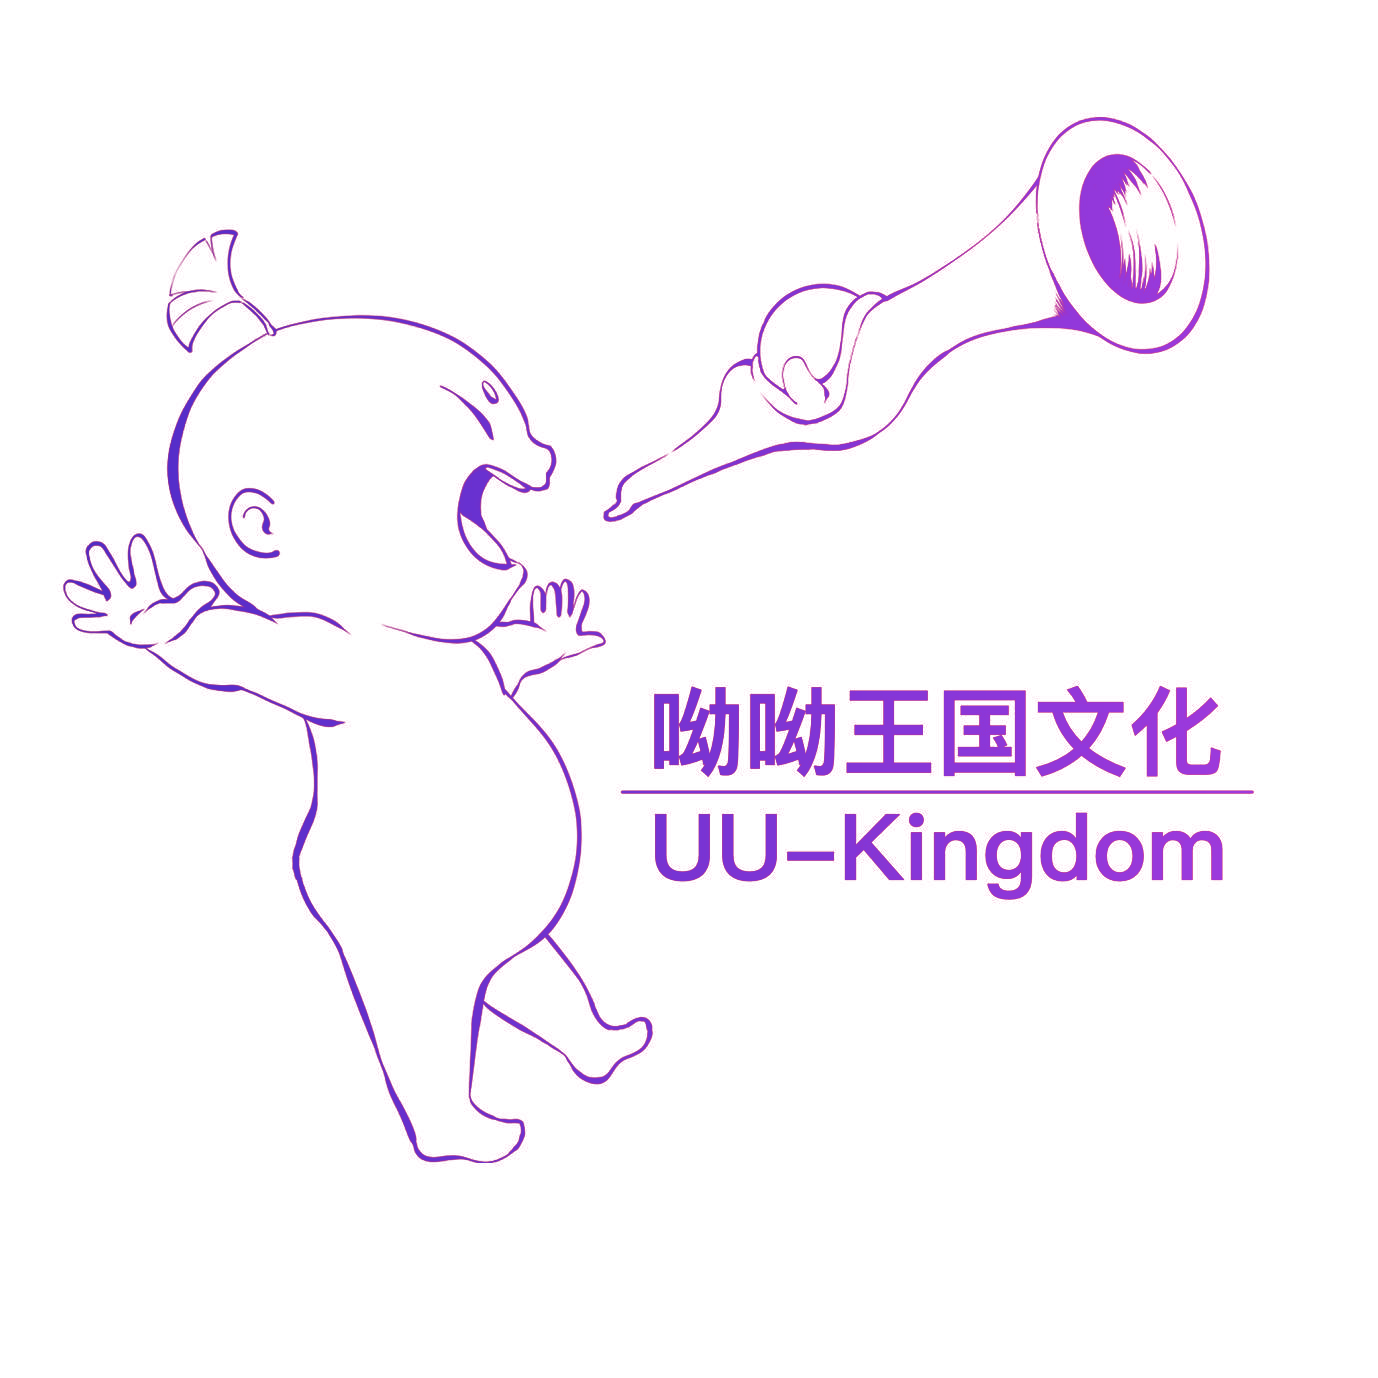 呦呦王国文化UU-Kingdom